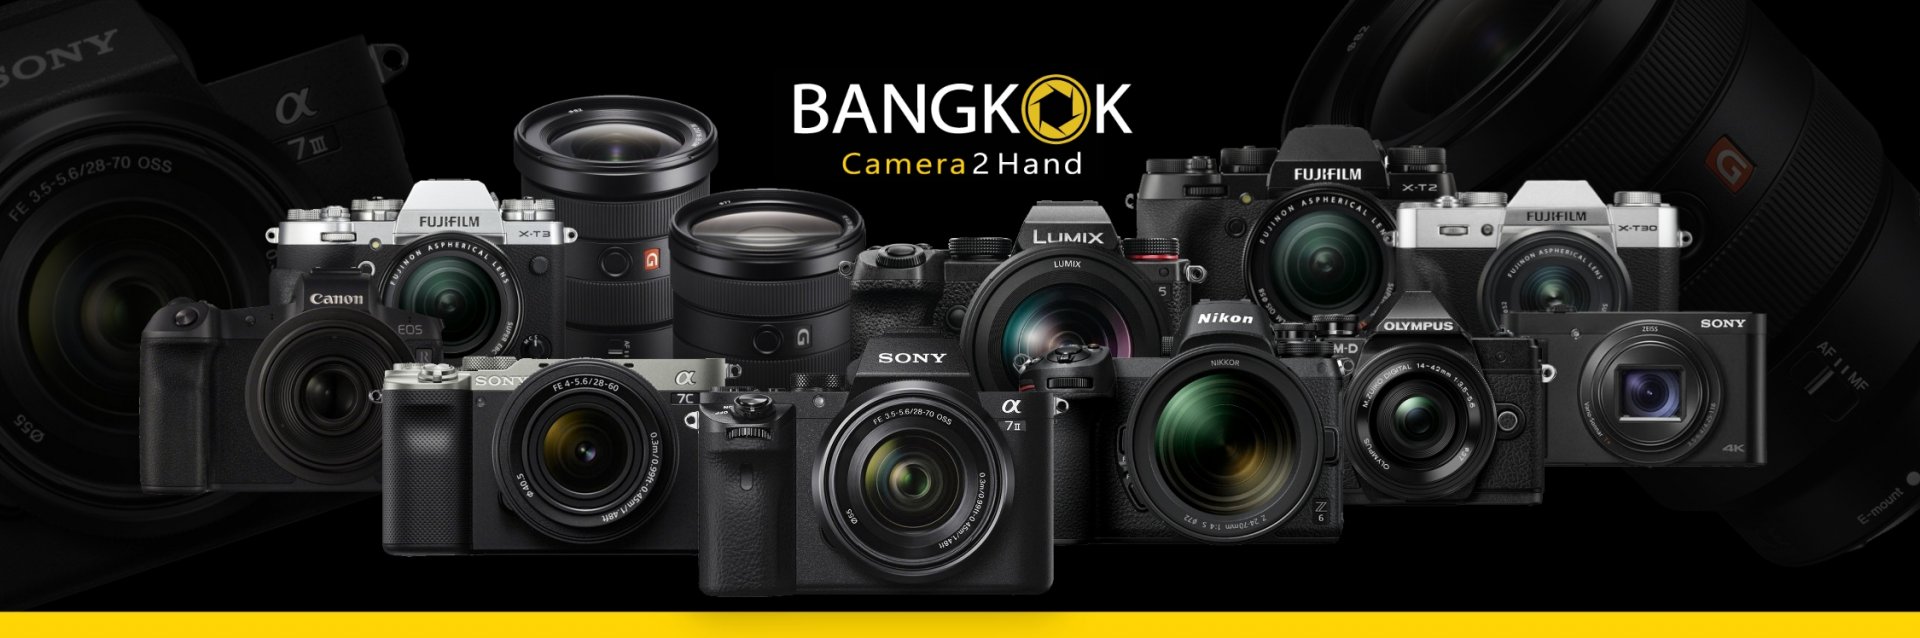 กล้องมือสอง เลนส์มือสอง ร้านขายกล้อง BangkokCamera2hand